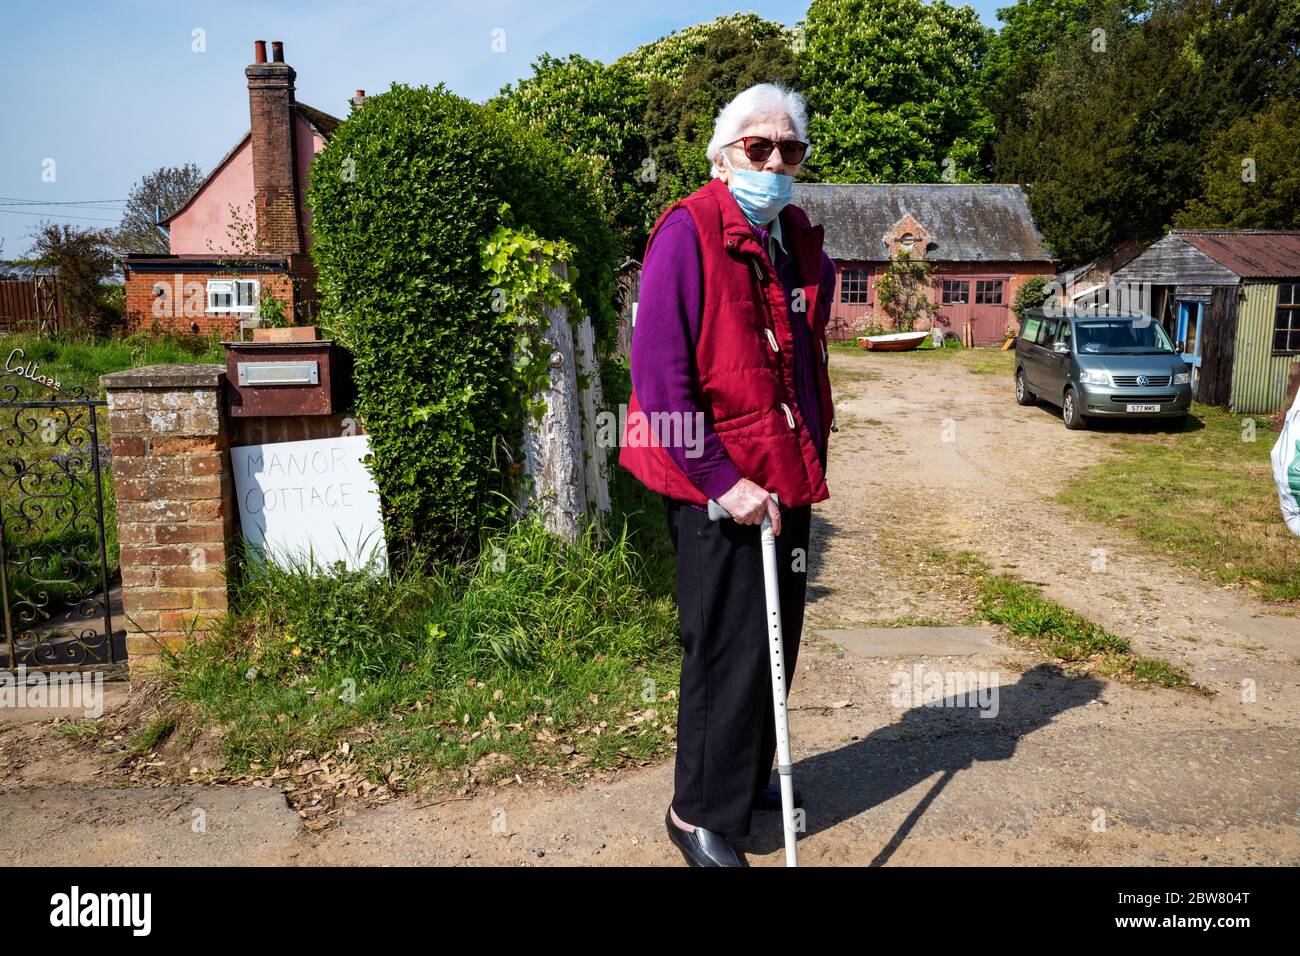 Pensionista de edad avanzada que usa la máscara facial incorrectamente Foto de stock